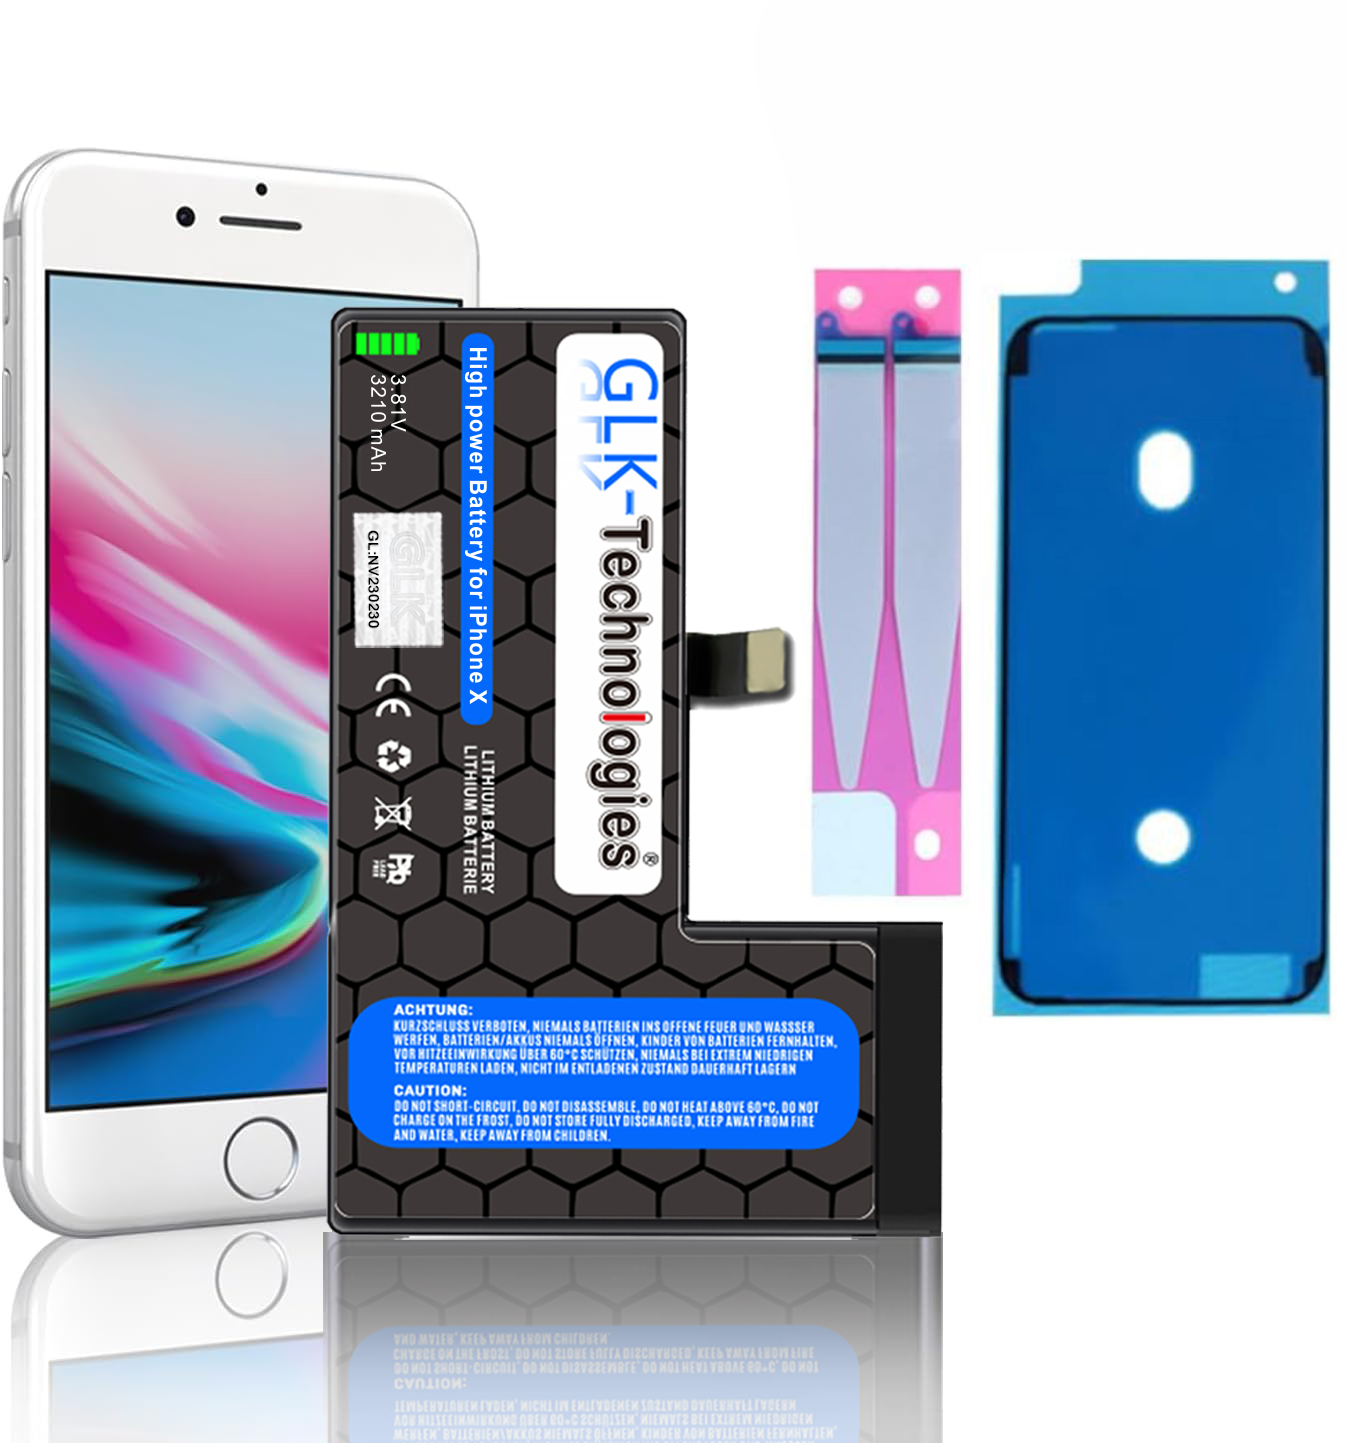 GLK-TECHNOLOGIES Apple Lithium-Ionen, Smartphone iPhone Volt, Li-Ion Akku, Ersatz 2X inkl. 3.8 2930mAh Klebebandsätze X